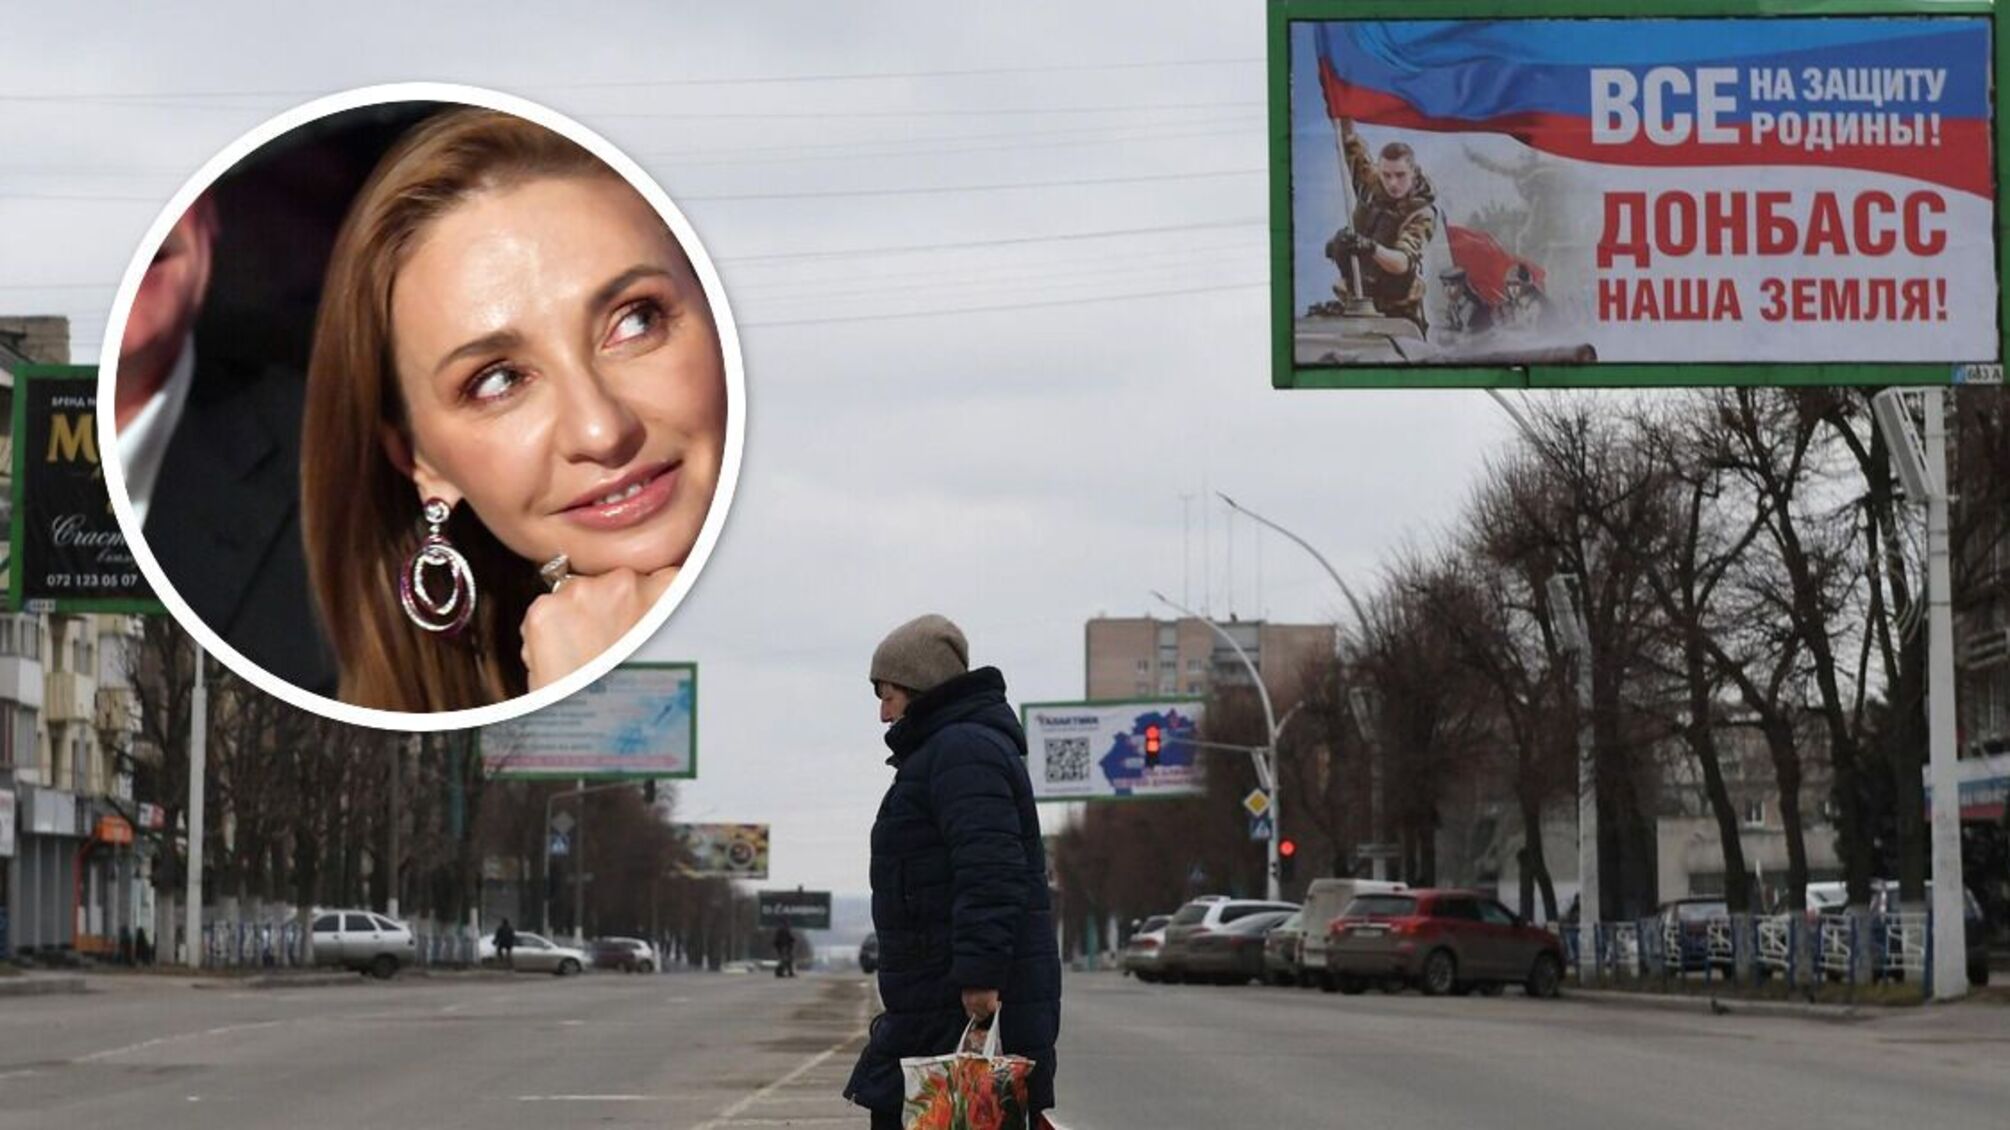 Дружина Пєскова отримає 14 млн рублів за поїздку в Луганськ